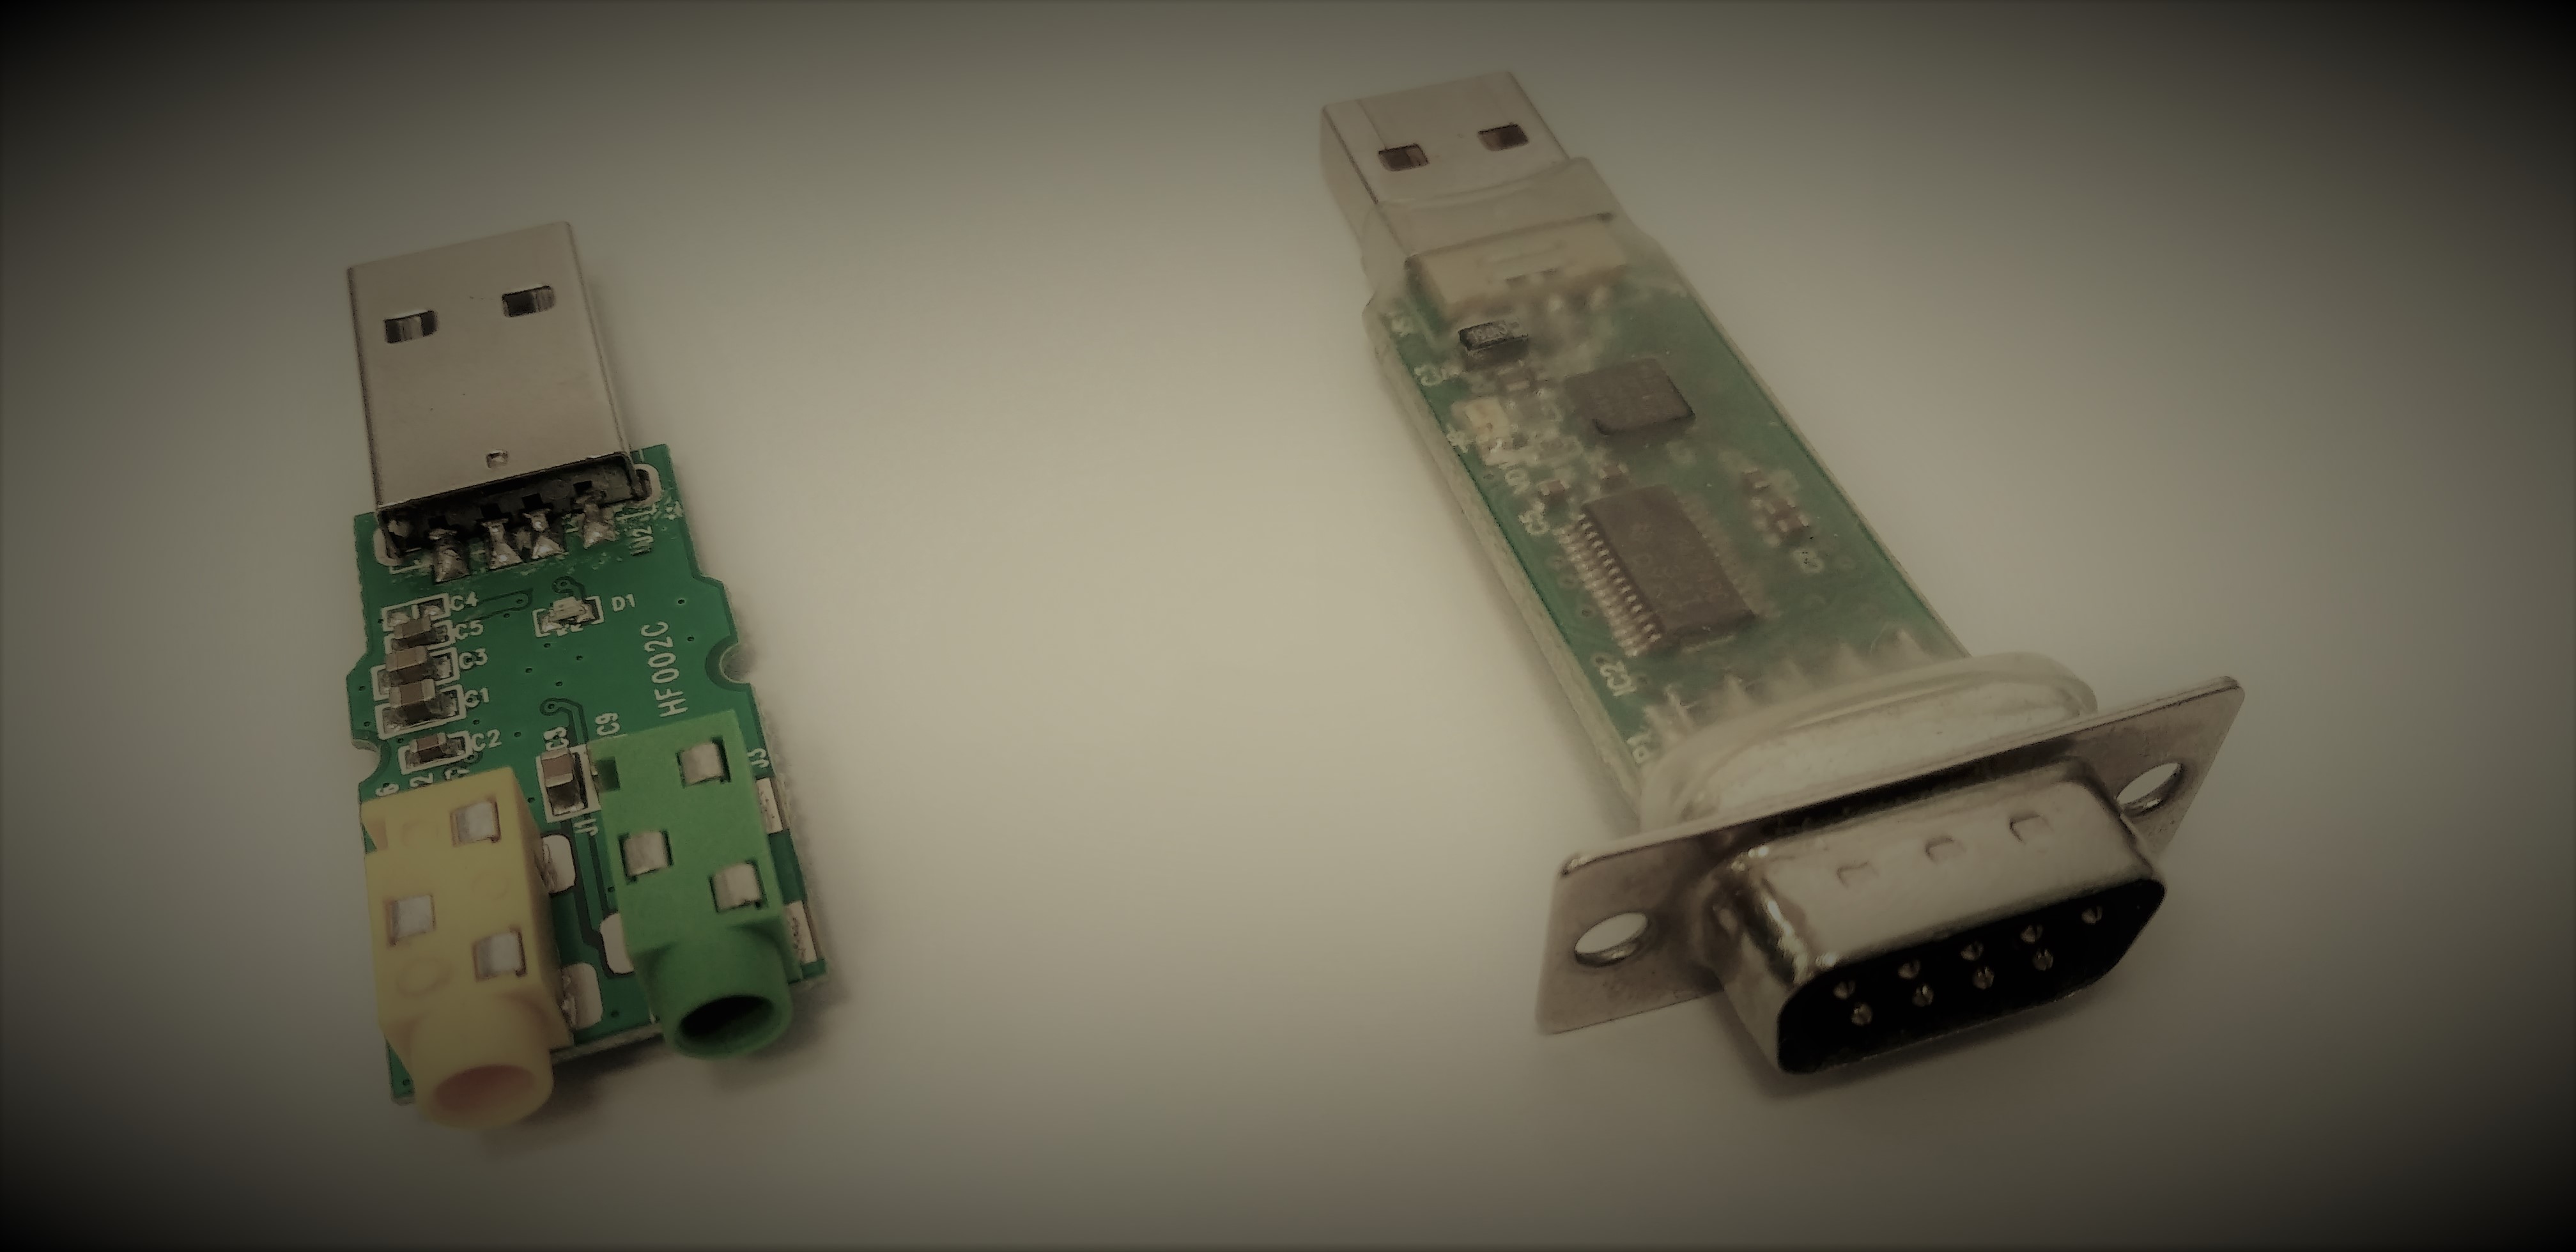 Составное устройство USB на STM32. Часть 3: Звуковое устройство отдельно, виртуальный СОМ-порт отдельно